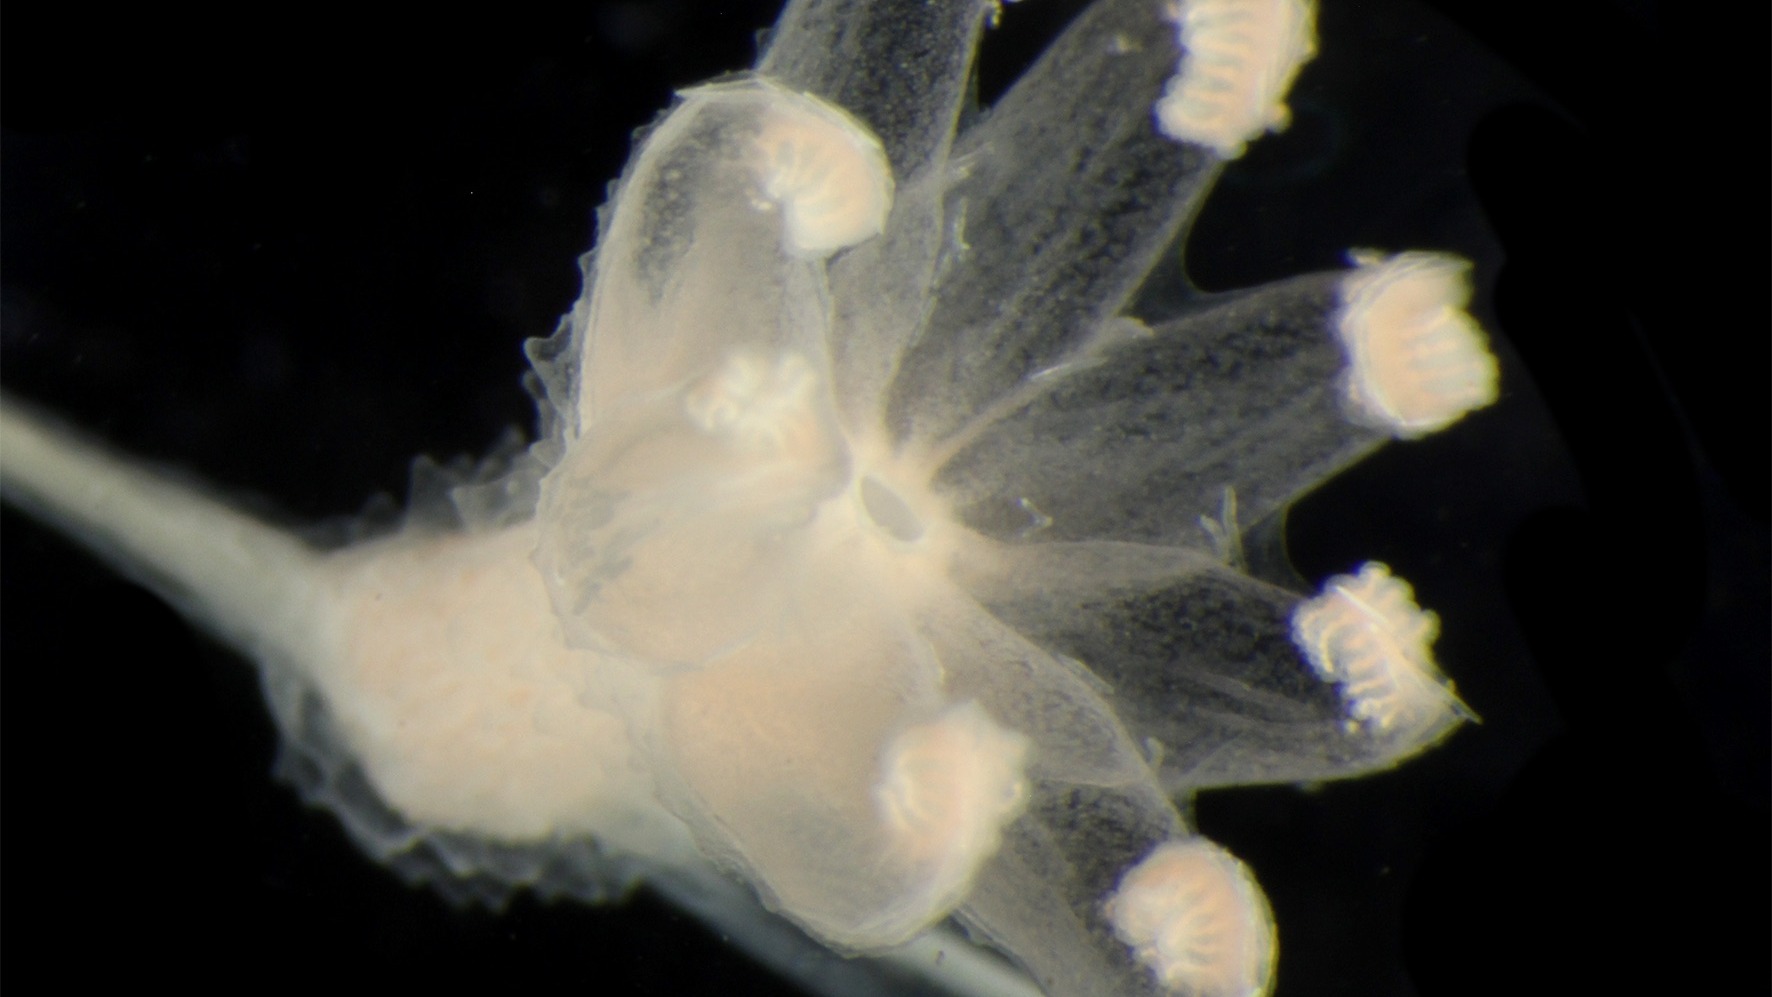 एकत्र किए गए 55 नमूनों में से सात को नई प्रजातियों के रूप में पुष्टि की गई है, जिसमें क्राइसोगोरगिया अब्लूडो, एक प्रकार का मूंगा शामिल है।